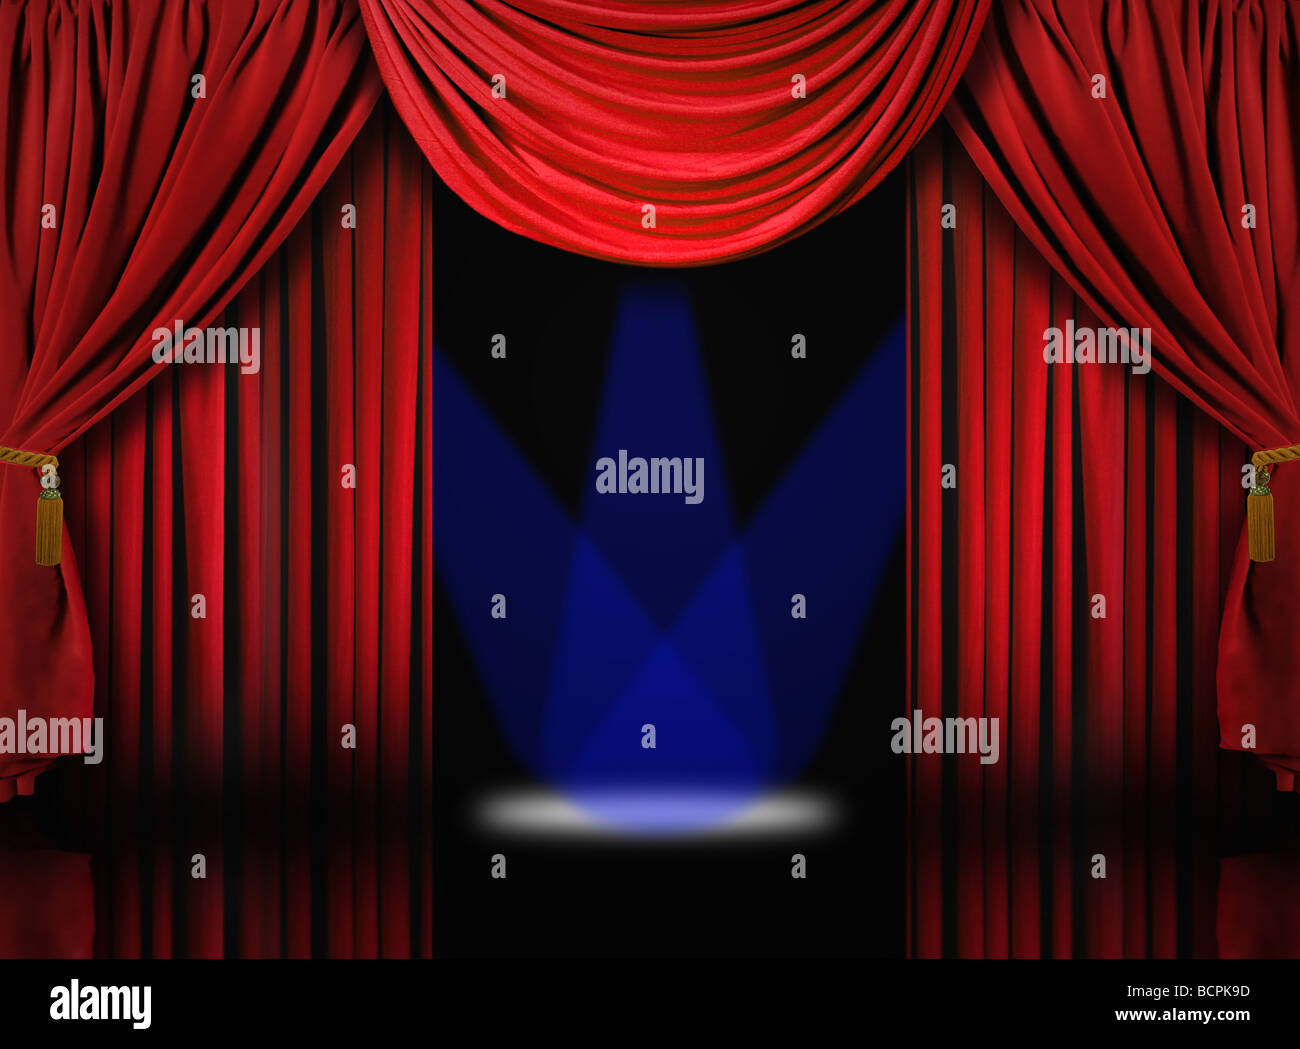 Le bellissime Red Velvet palcoscenico teatrale tendaggi a drappo con faretti blu Foto Stock